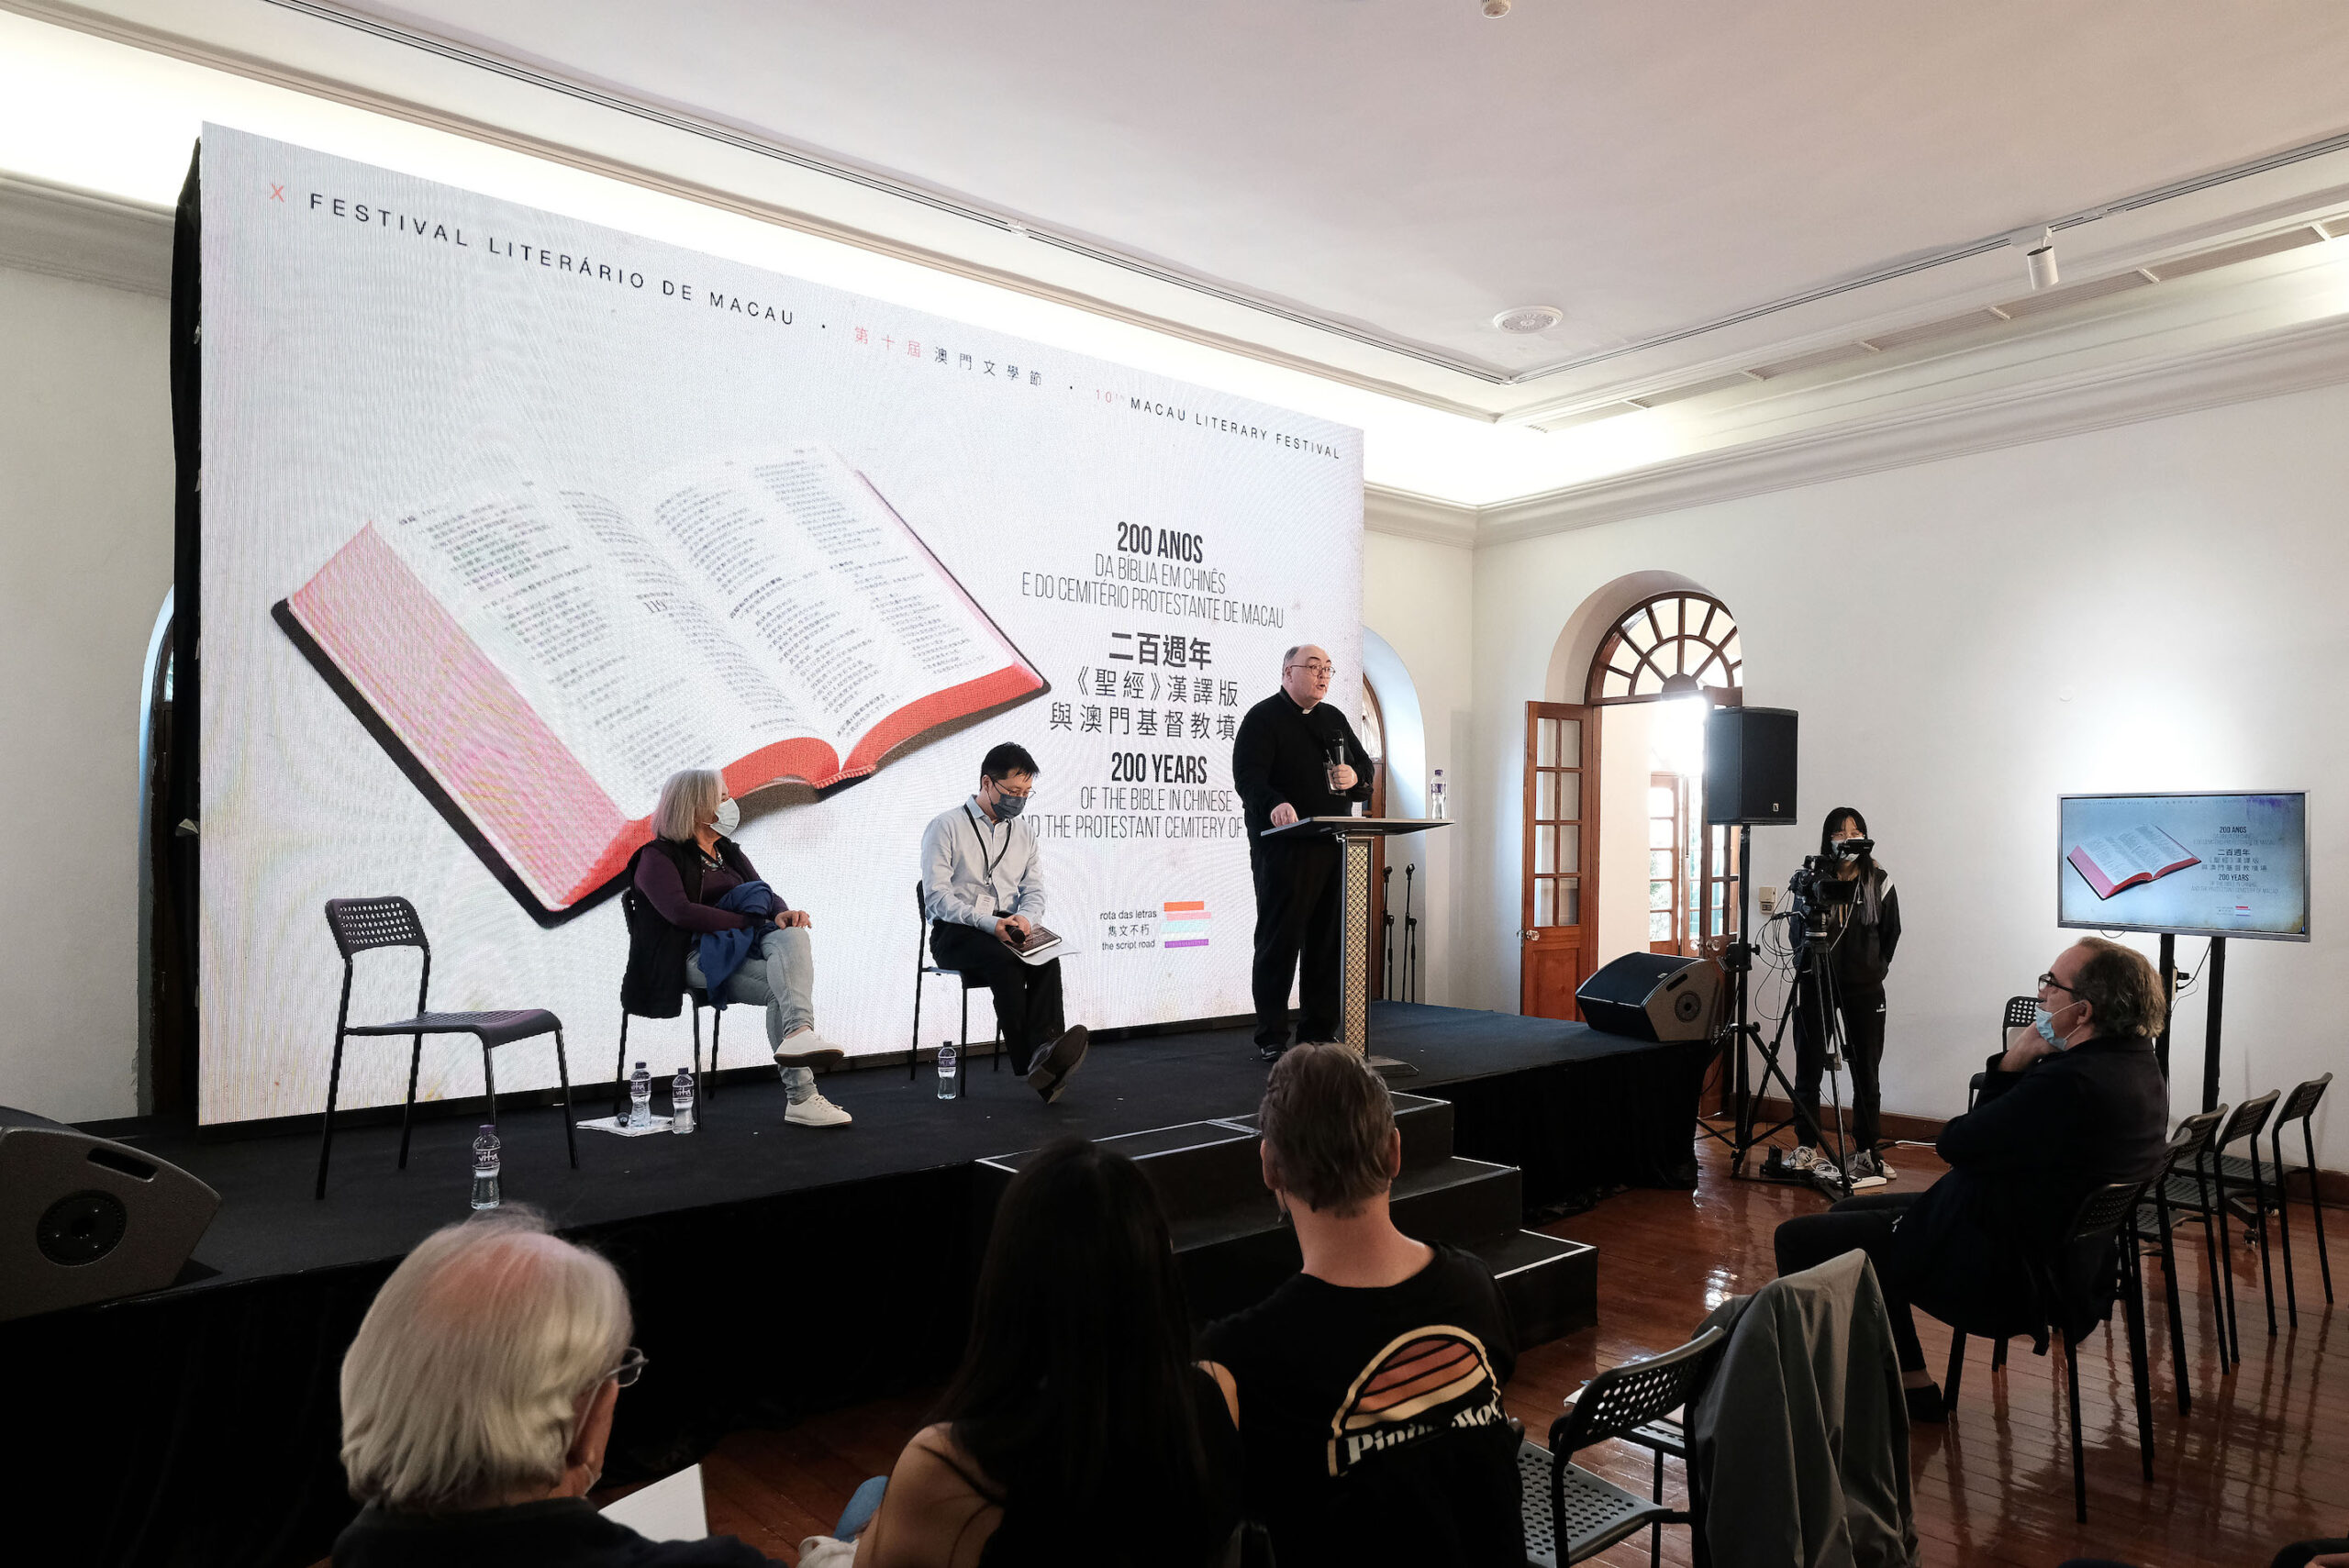 Rota das Letras | Festival aposta em autores locais, celebra Saramago e “Romance dos Três Reinos”